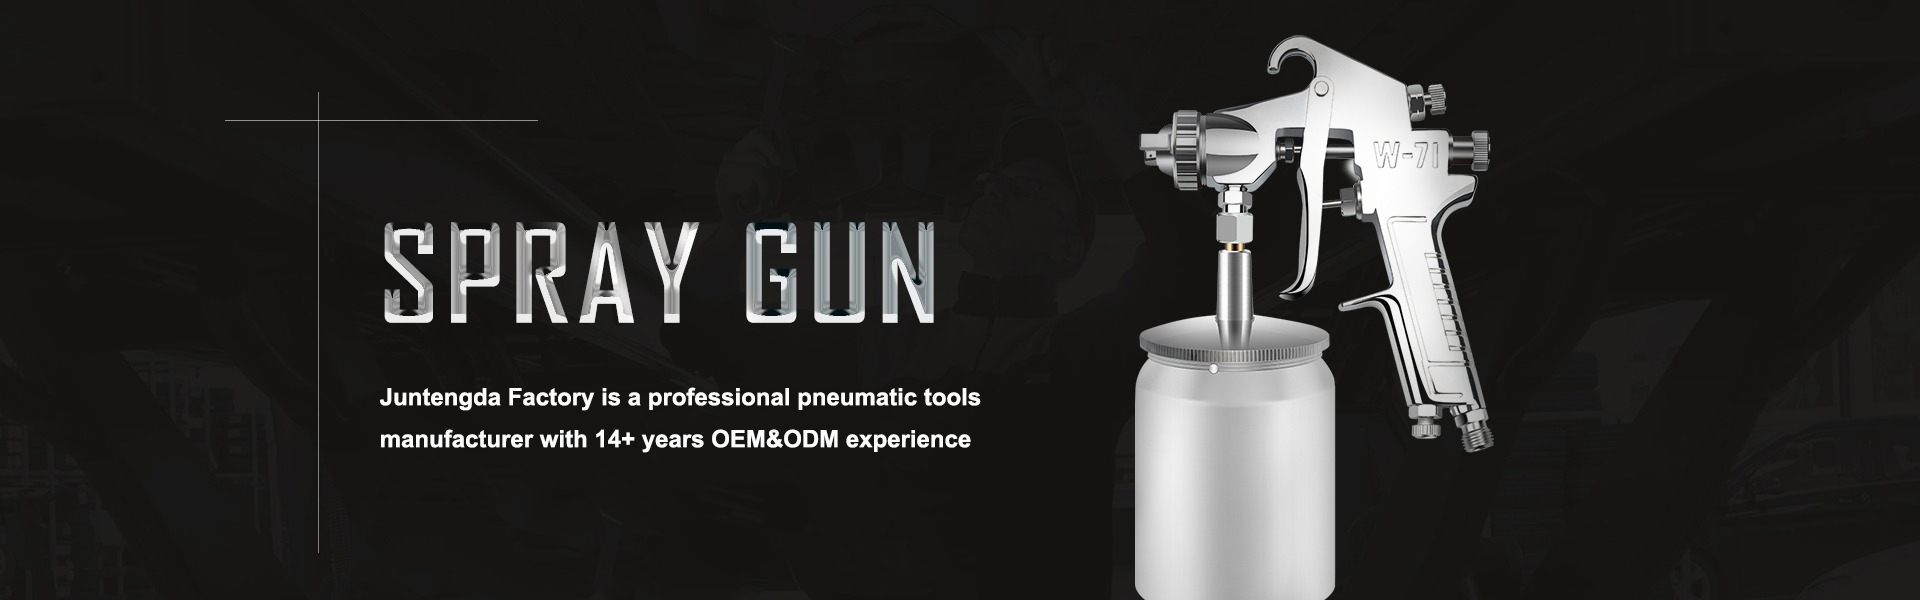 Pneumatic Tool Professional Hersteller, Sprühpistole, Luftschleifer,Dongguan Liaobu Juntengda Pneumatic Tools CO.,LTD